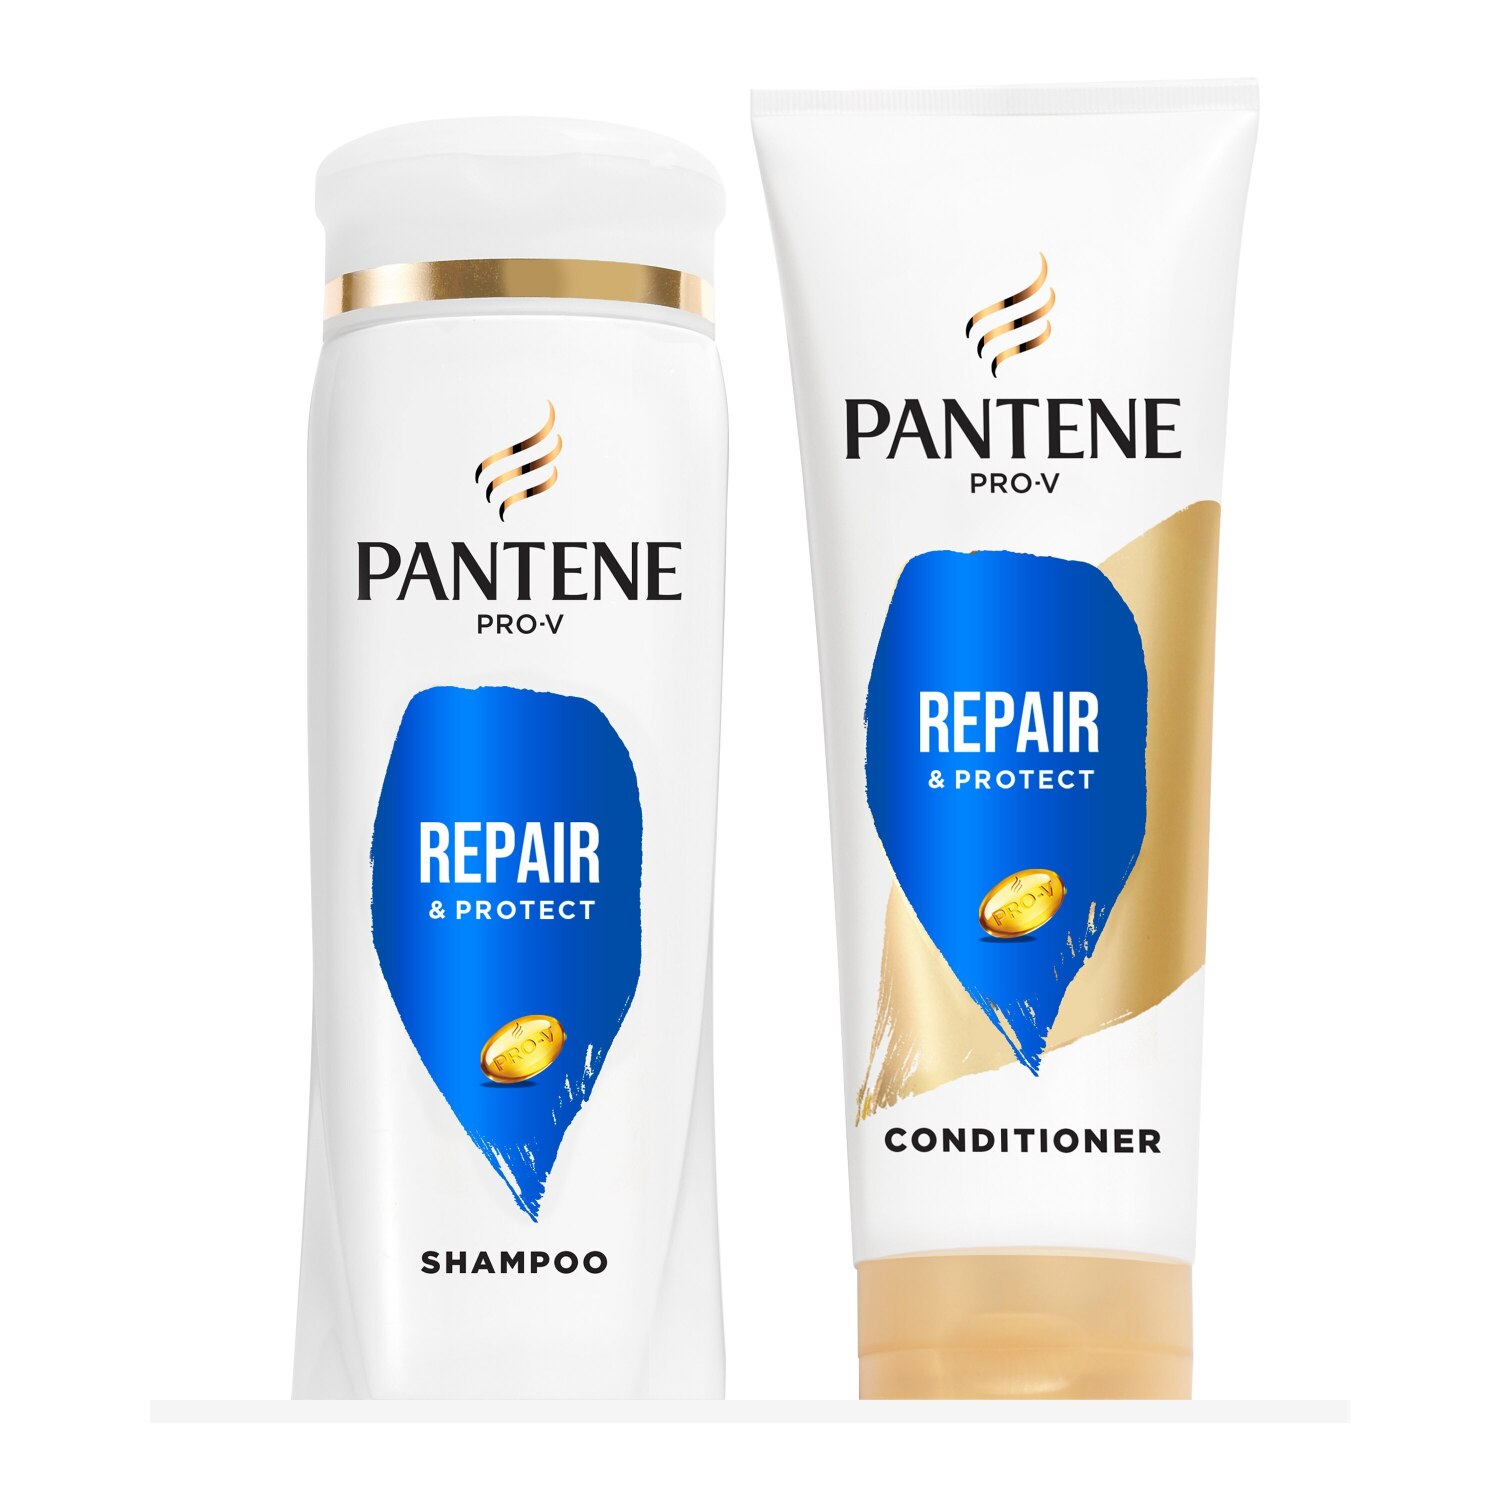 Pantene Pro-V Repair & Protect Shampoo & Conditioner Dual Pack, 22.4 Oz , CVS